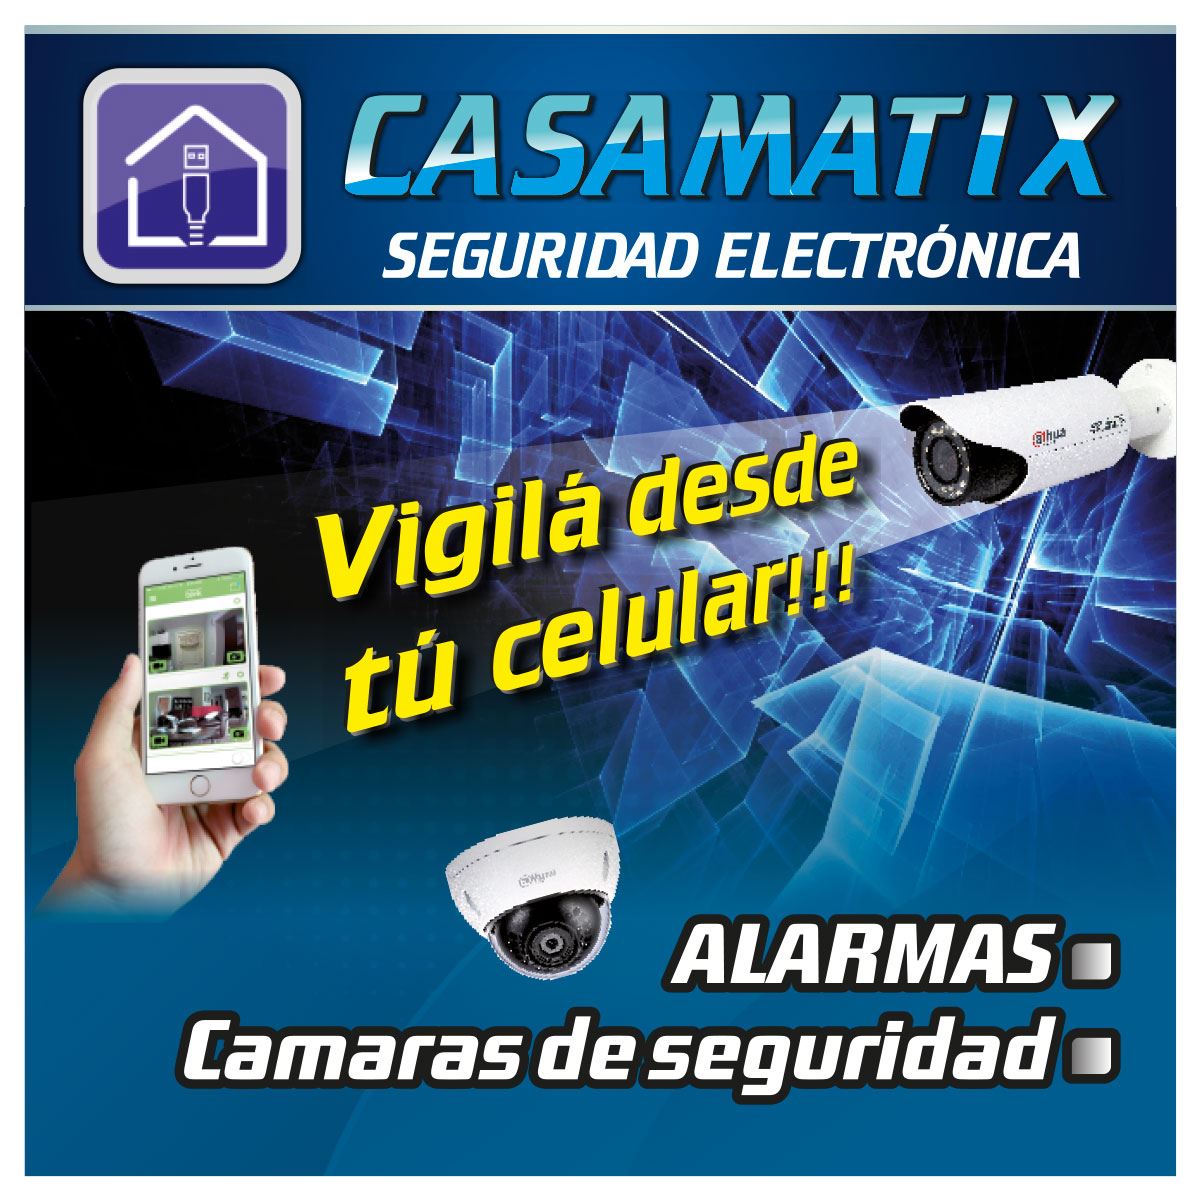 Seguridad electrónica - InfoGuia Traslasierra - Cámaras de seguridad